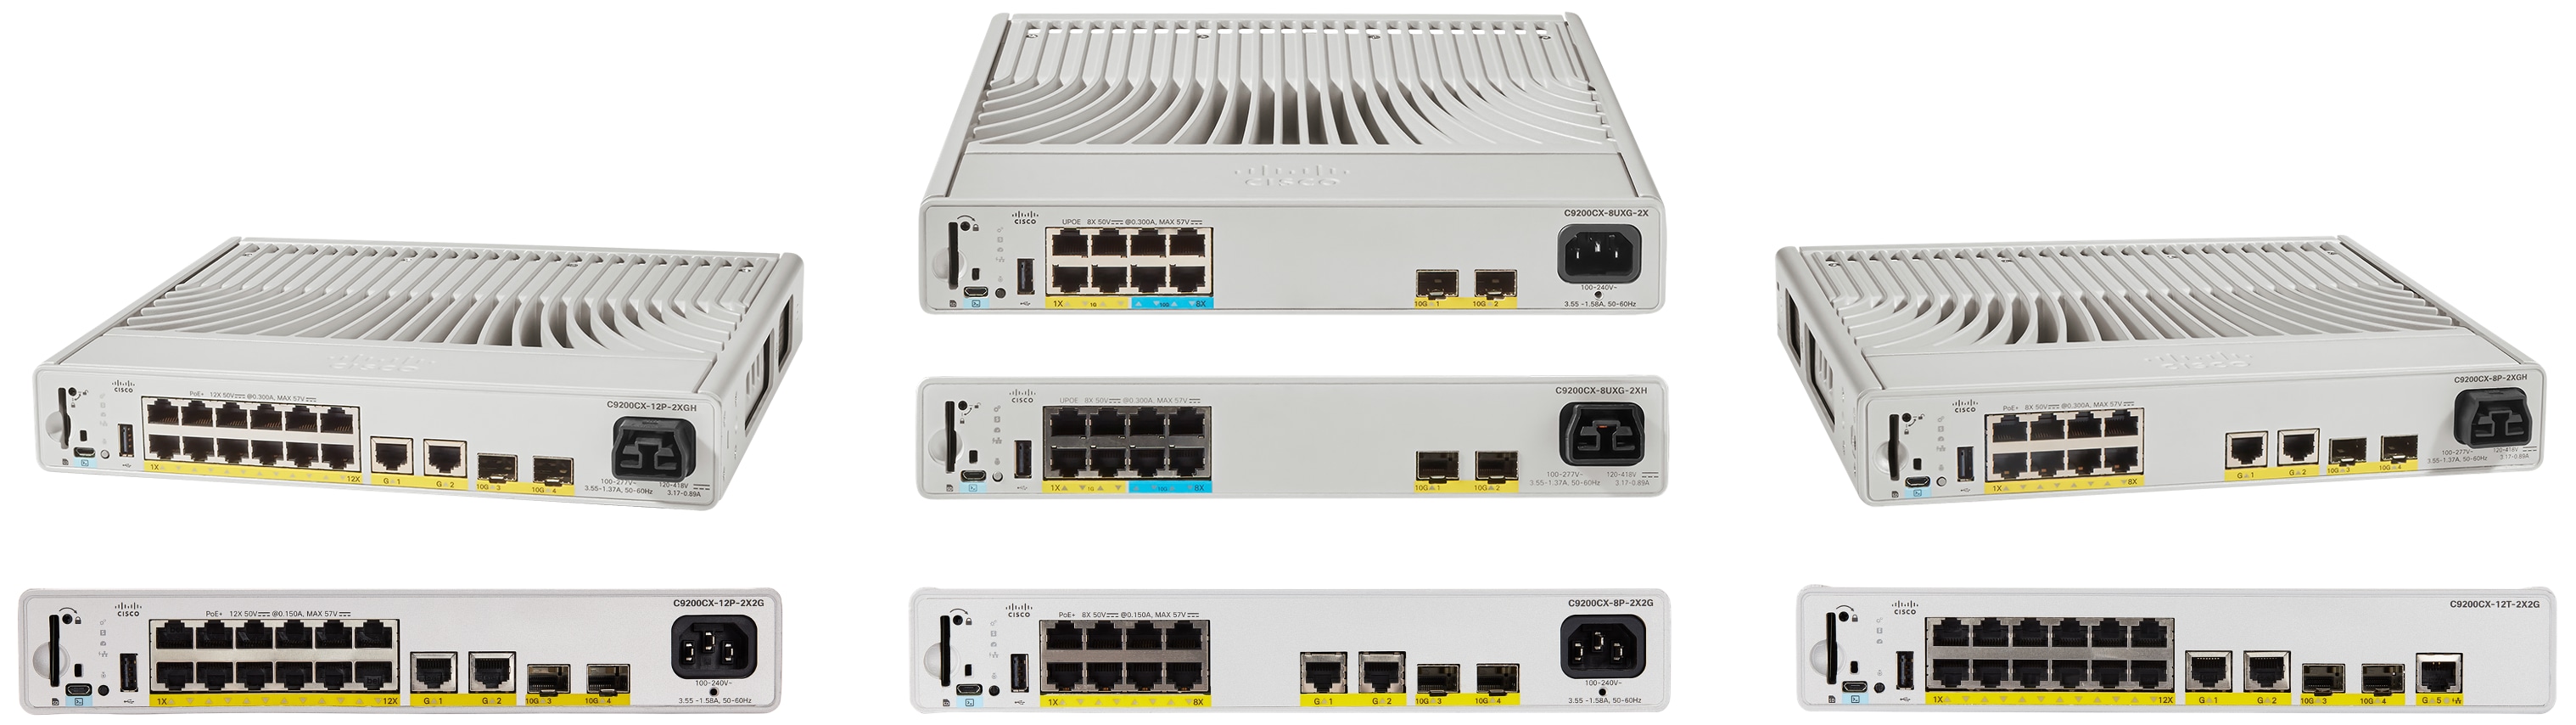 Cisco Catalyst 9200CX switches